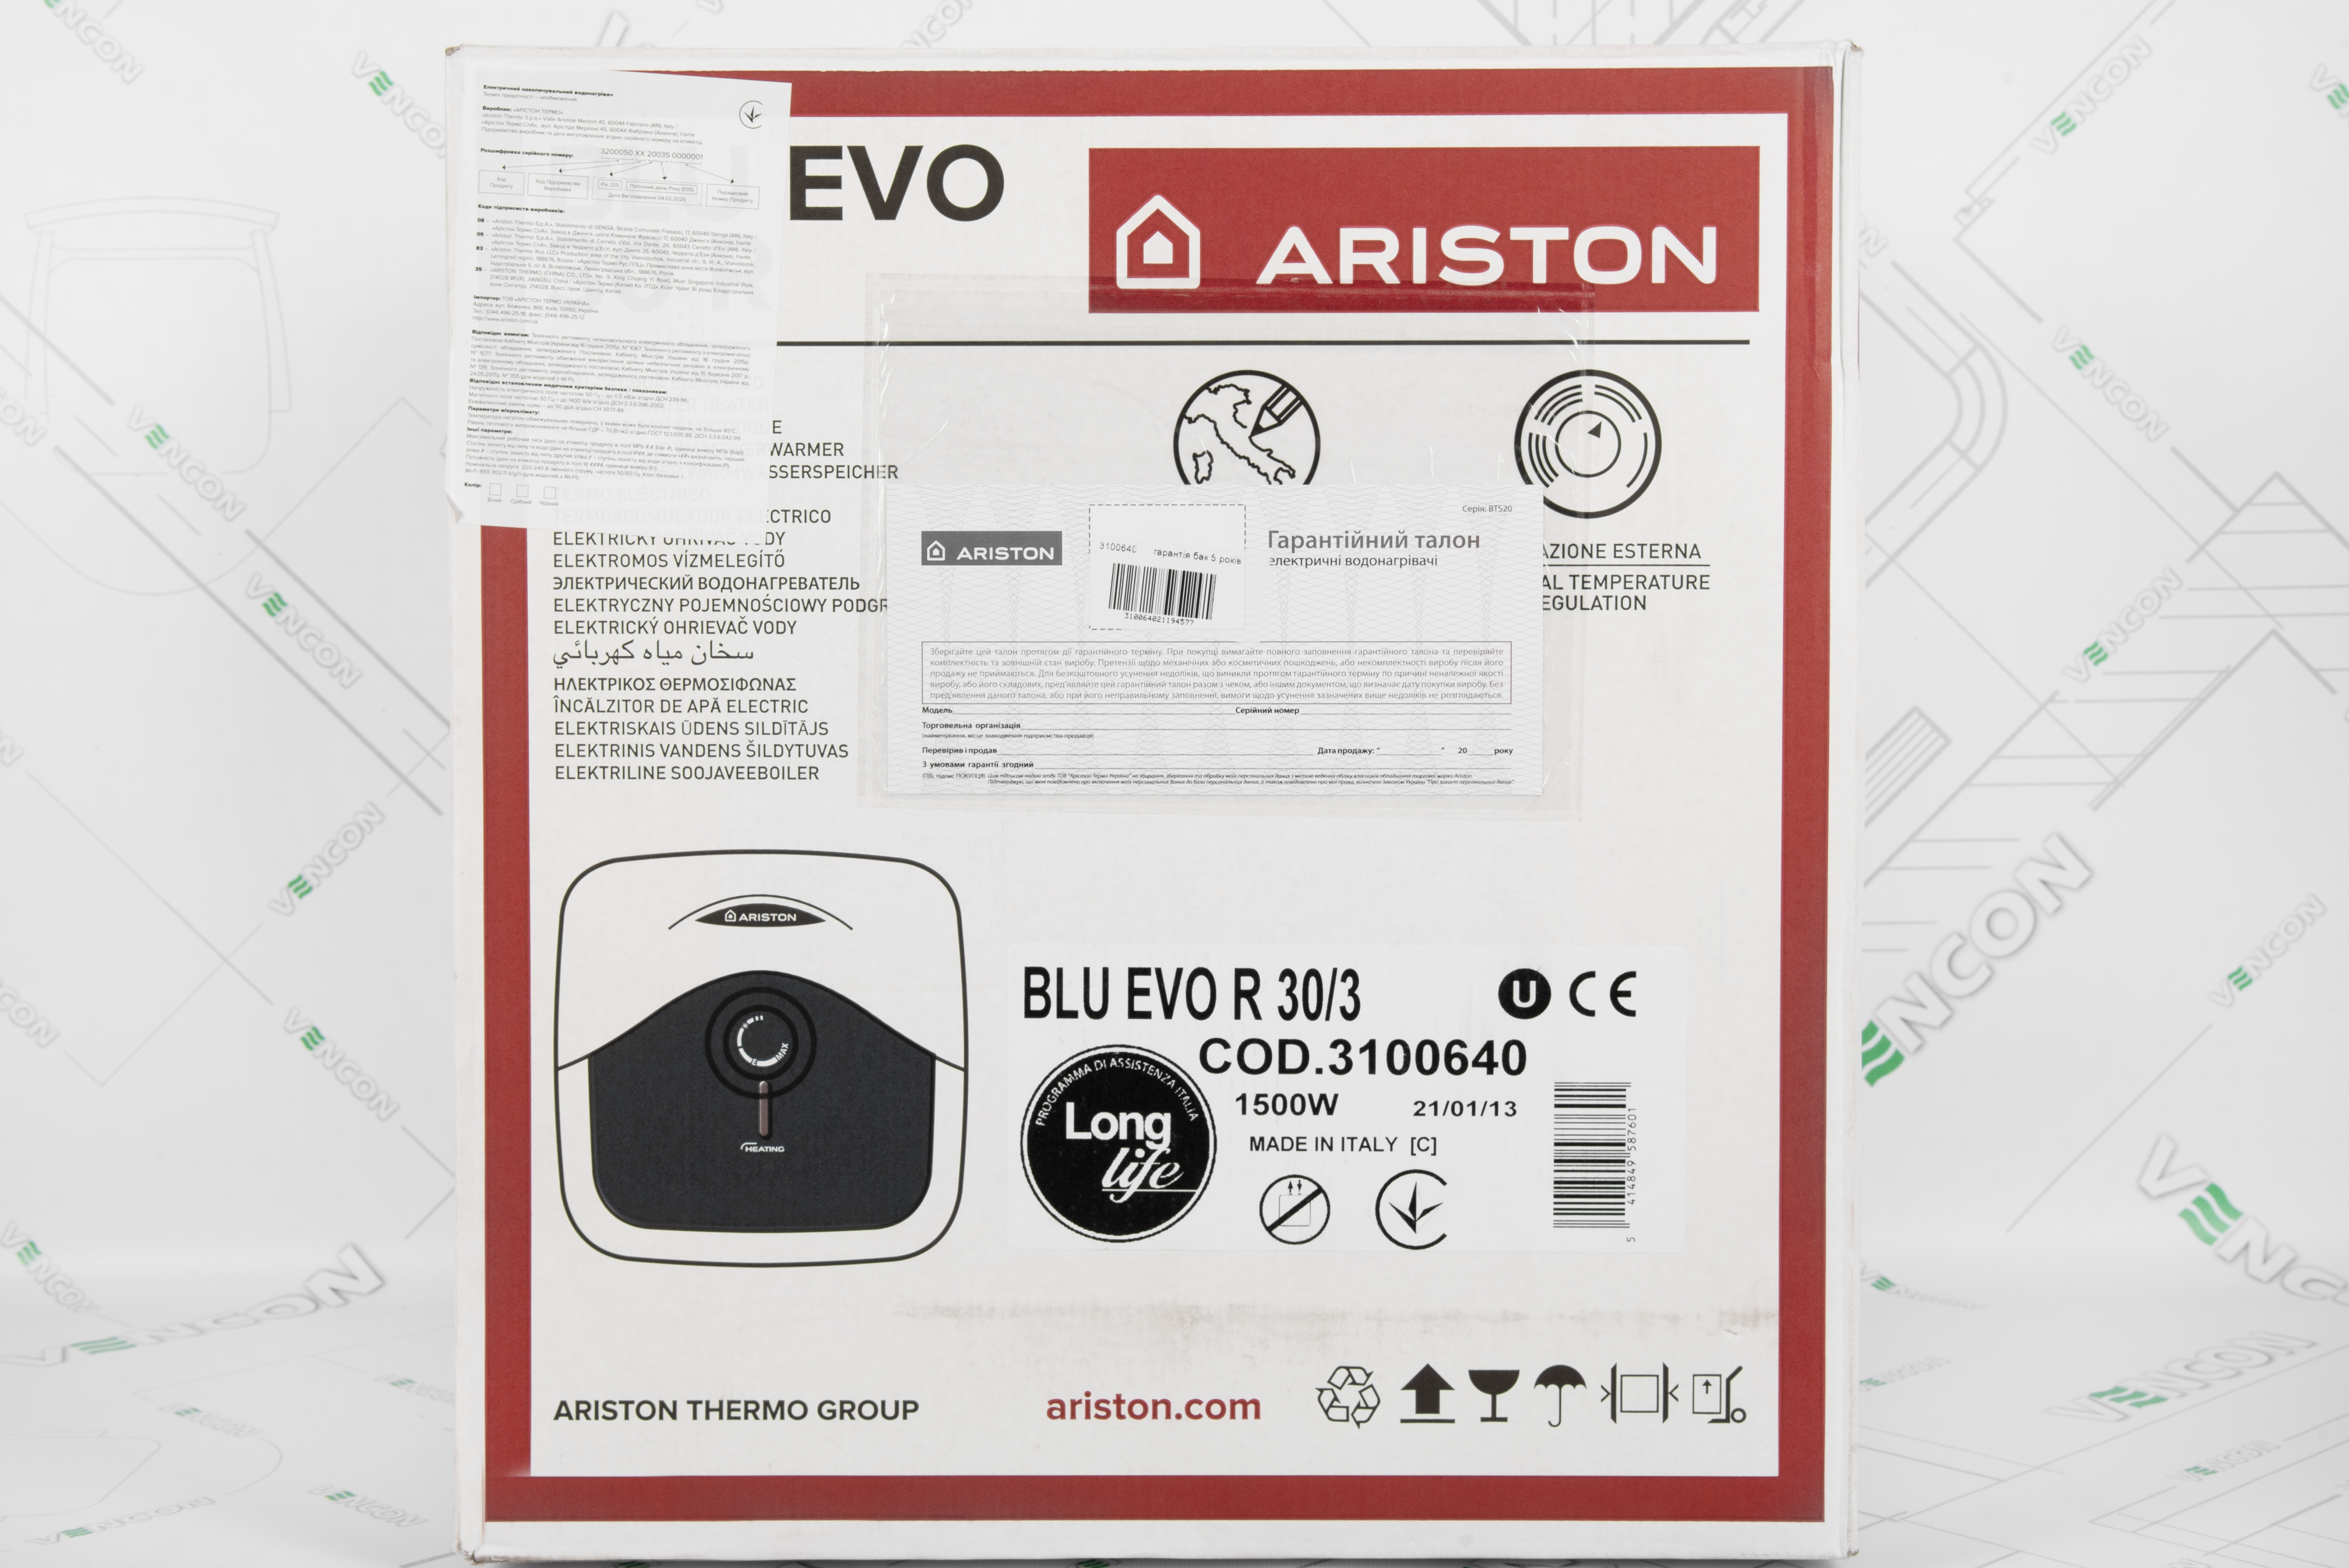 продукт Ariston Blu Evo R 30/3 - фото 14